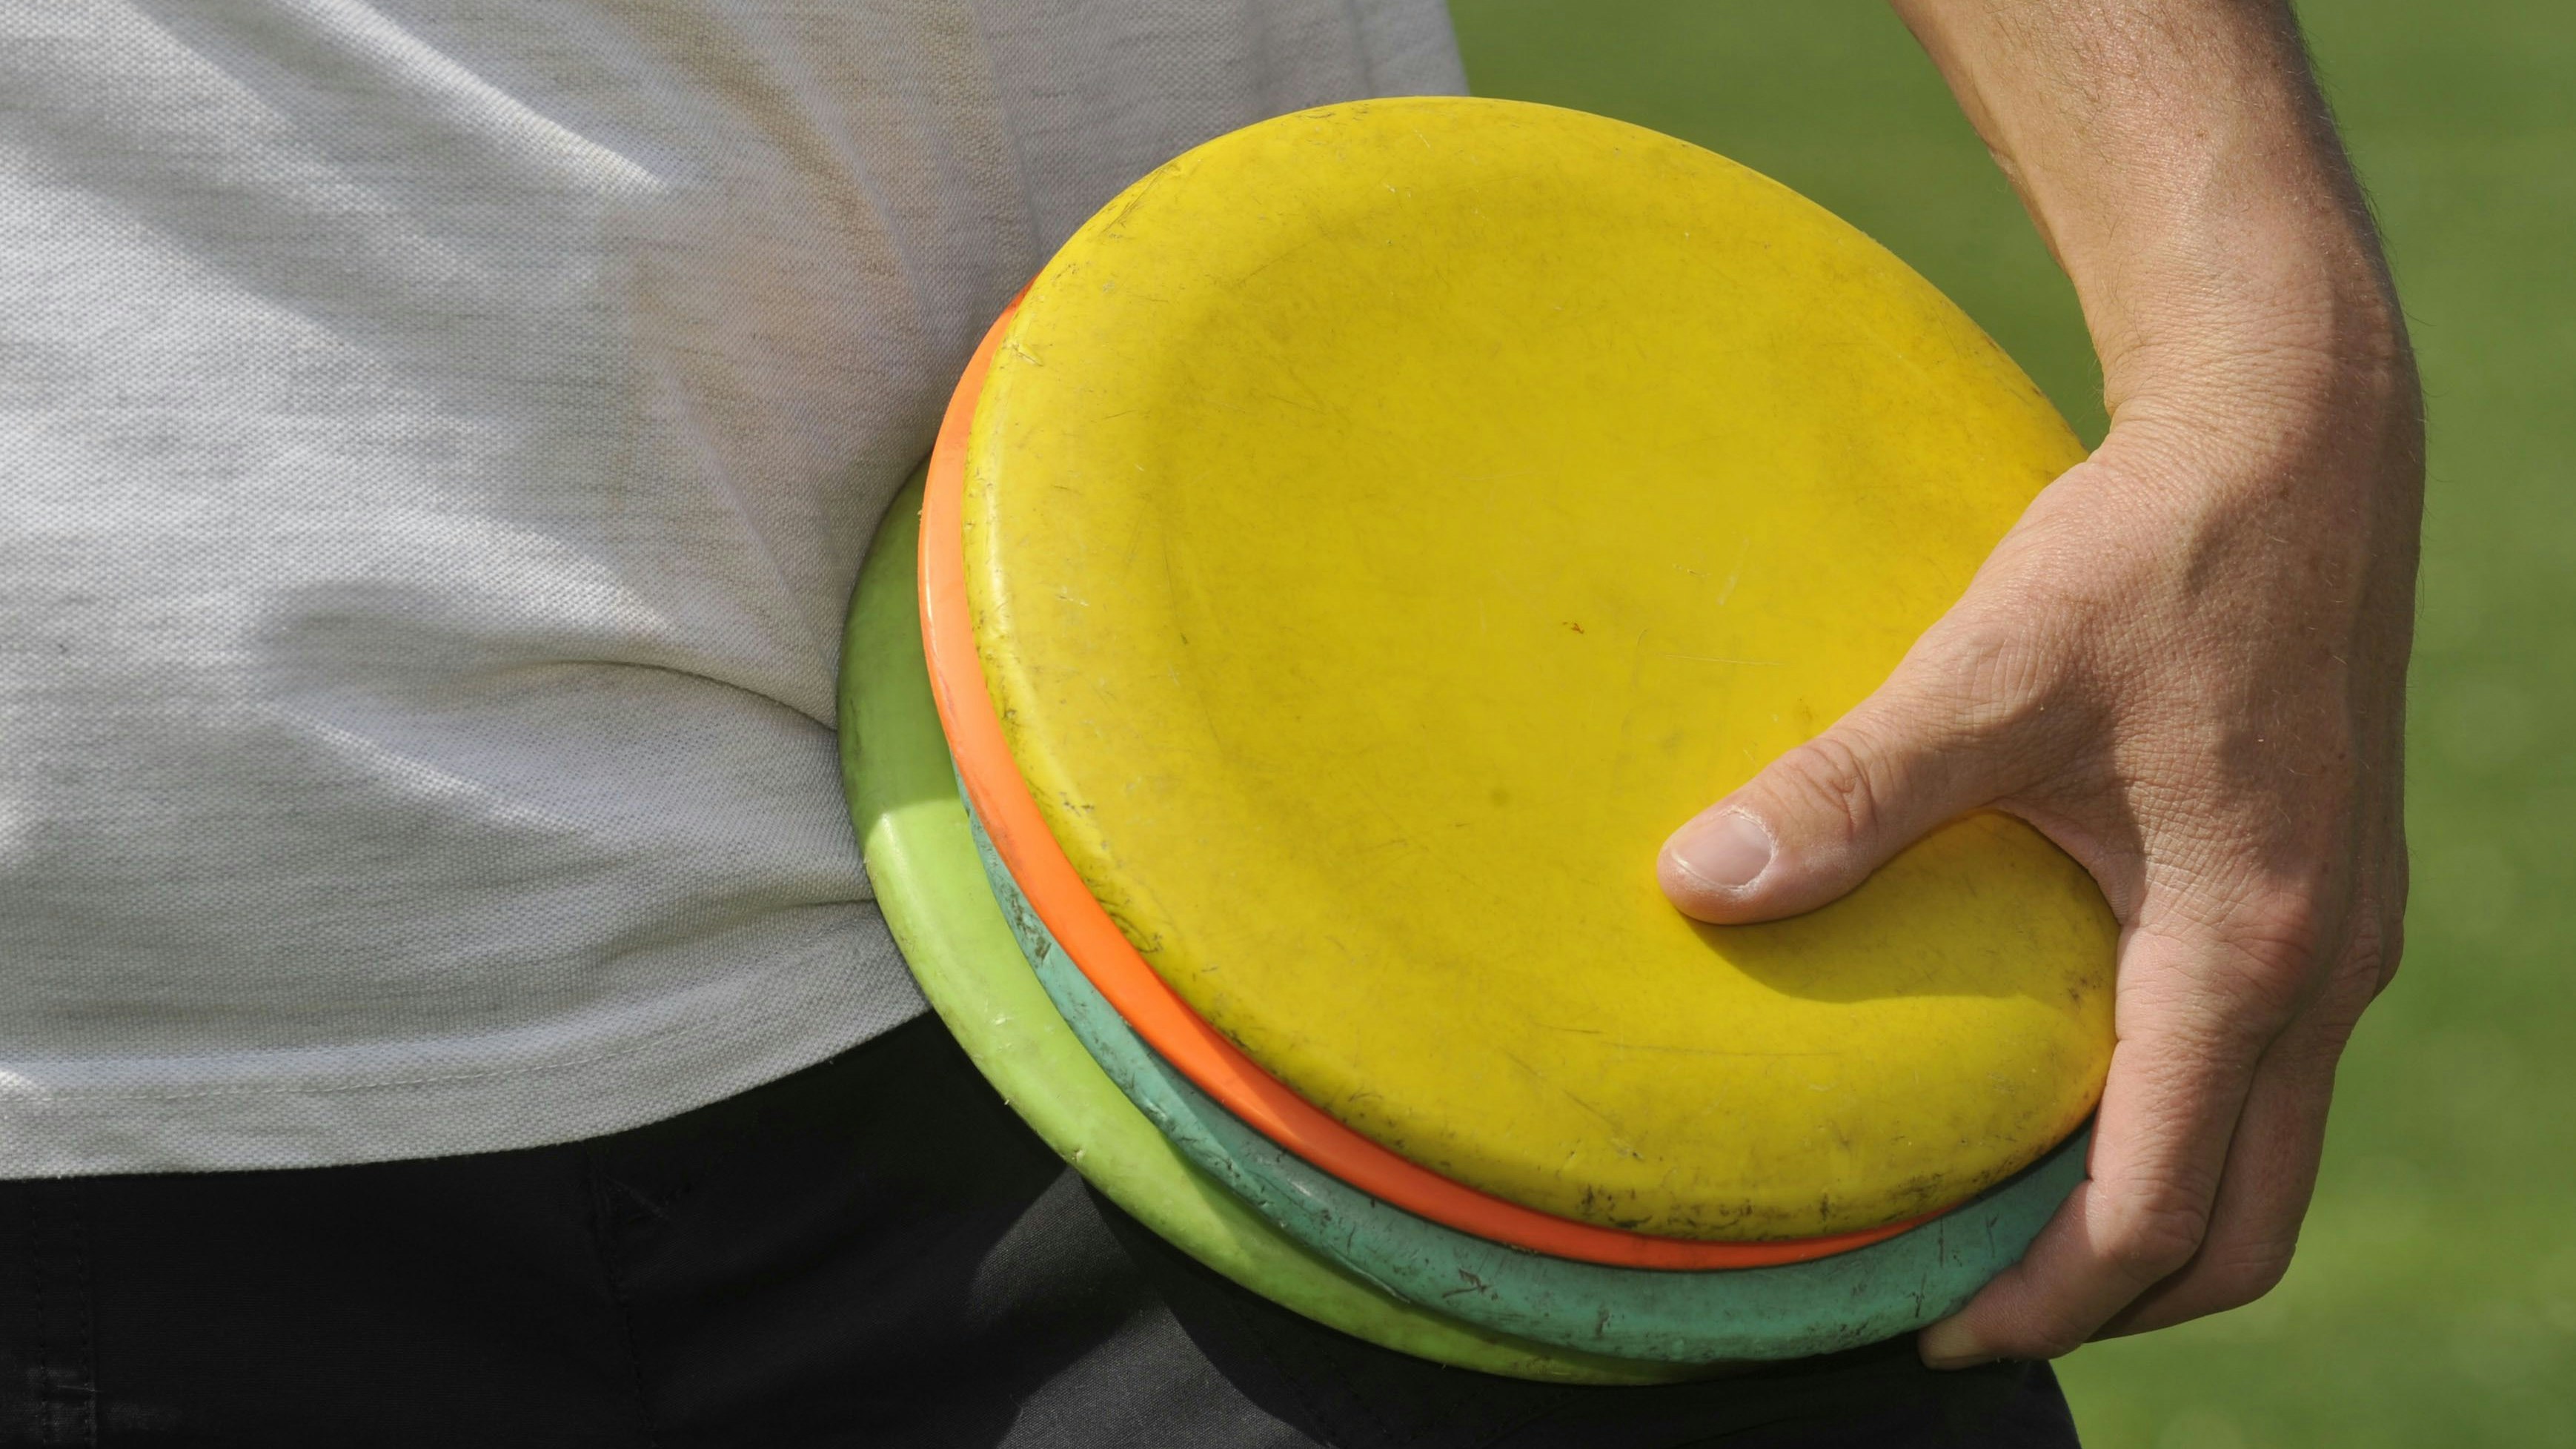 Bereit zum Wurf: Die Discgolf-Scheiben sind herkömmlichen Frisbees nicht unähnlich. Foto: dpa